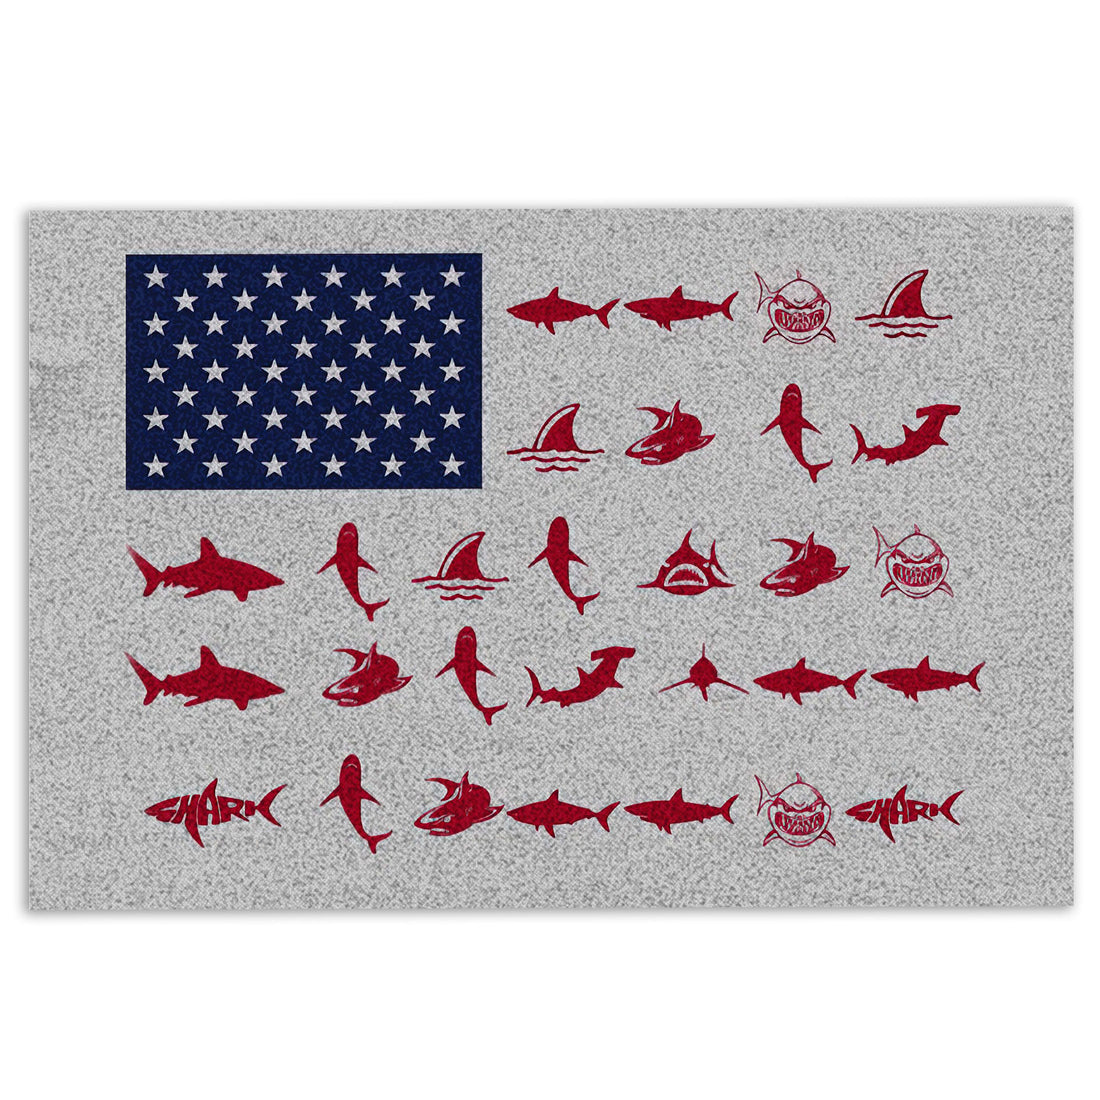 Ohaprints-Doormat-Outdoor-Indoor-Shark-Independence-Day-Happy-4Th-Of-July-American-Patriotic-Rubber-Door-Mat-438-18'' x 30''